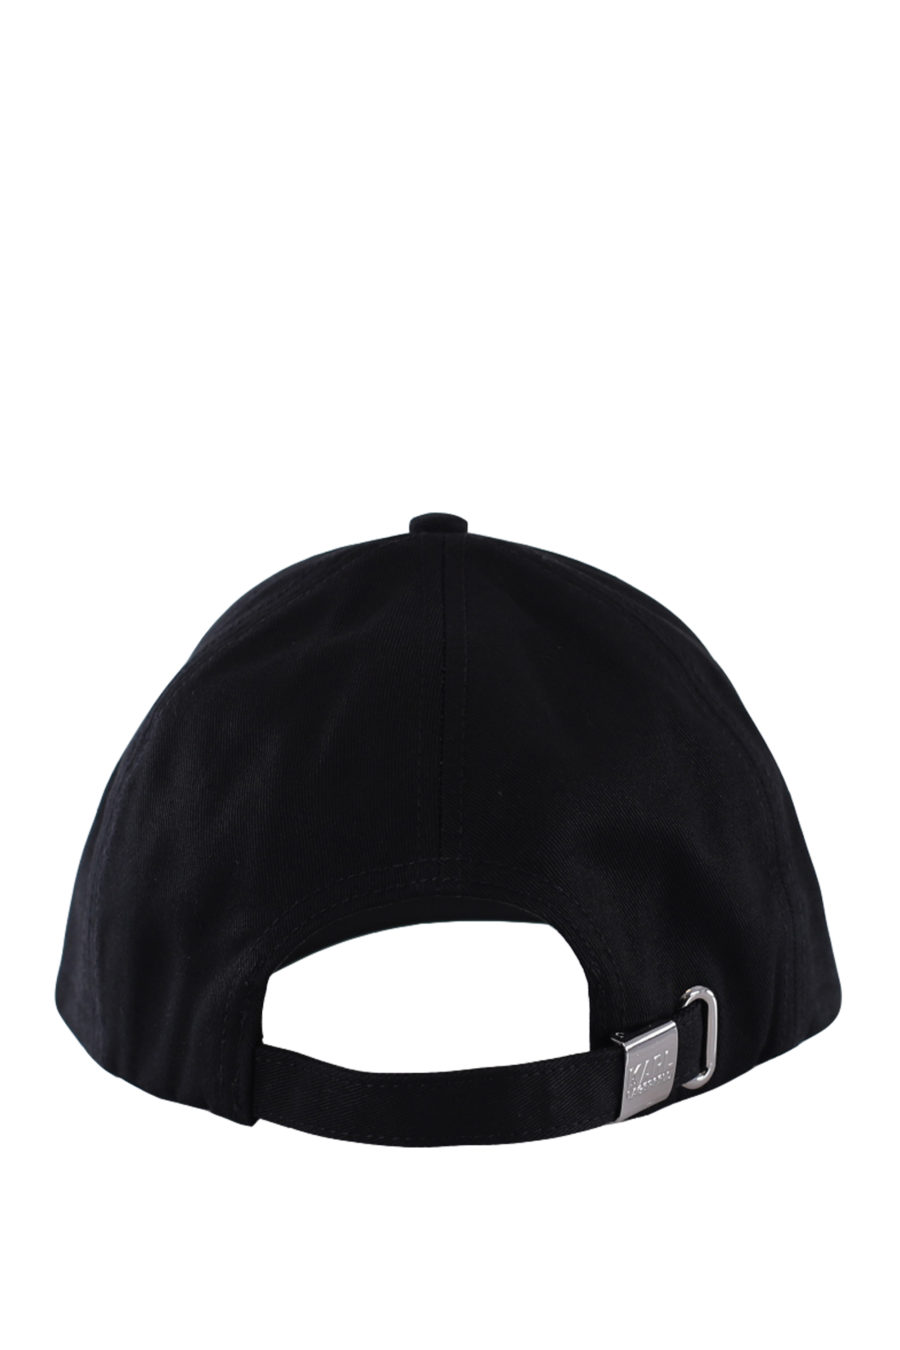 Black cap "ikonik" - IMG 0195